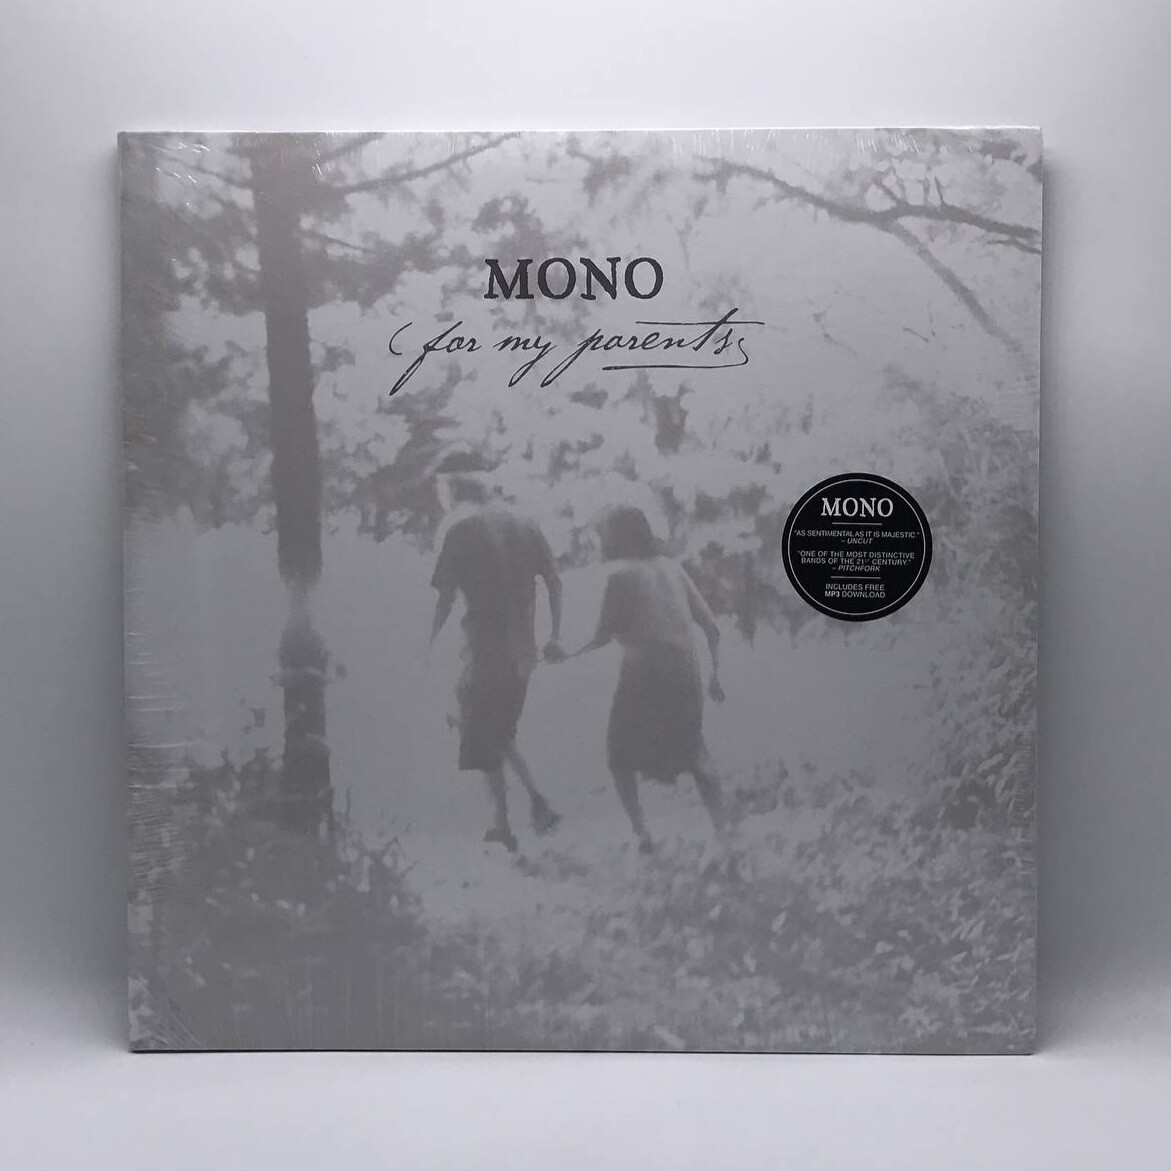 MONO -FOR MY PARENTS- 2XLP